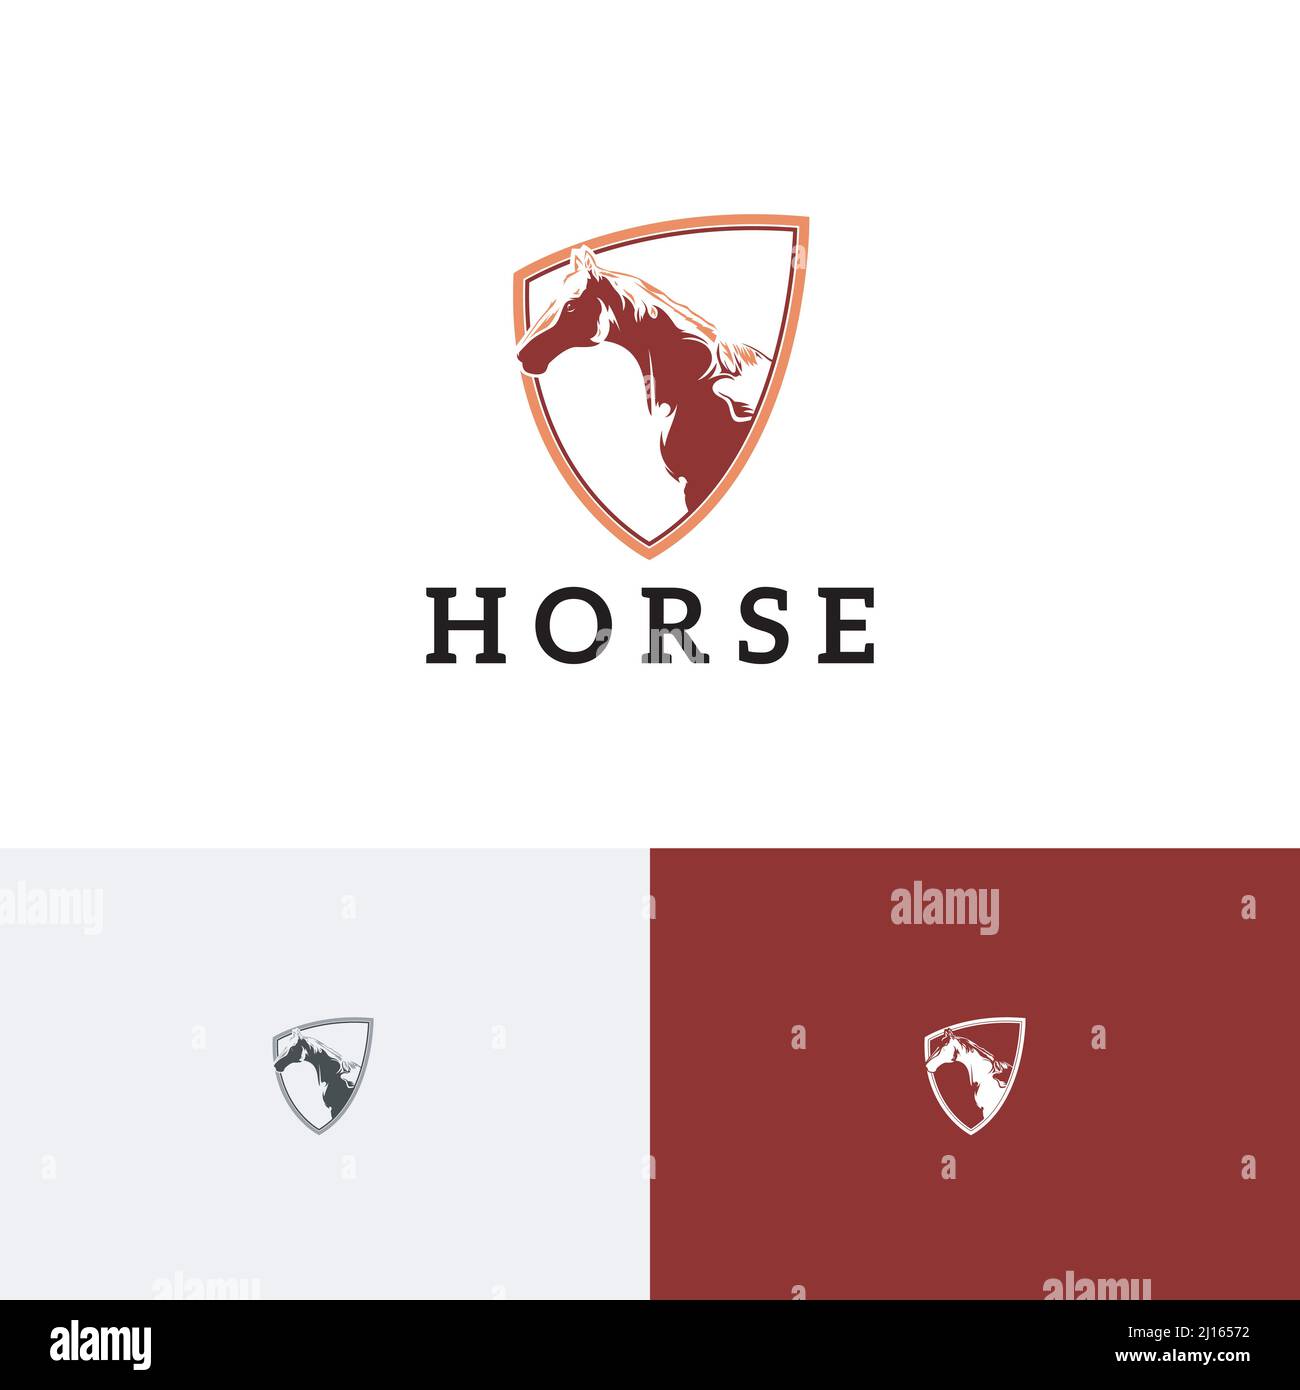 Vorlage Für Das Vintage Retro-Logo Von Equine Equestrian Shield Horse Engraving Style Stock Vektor